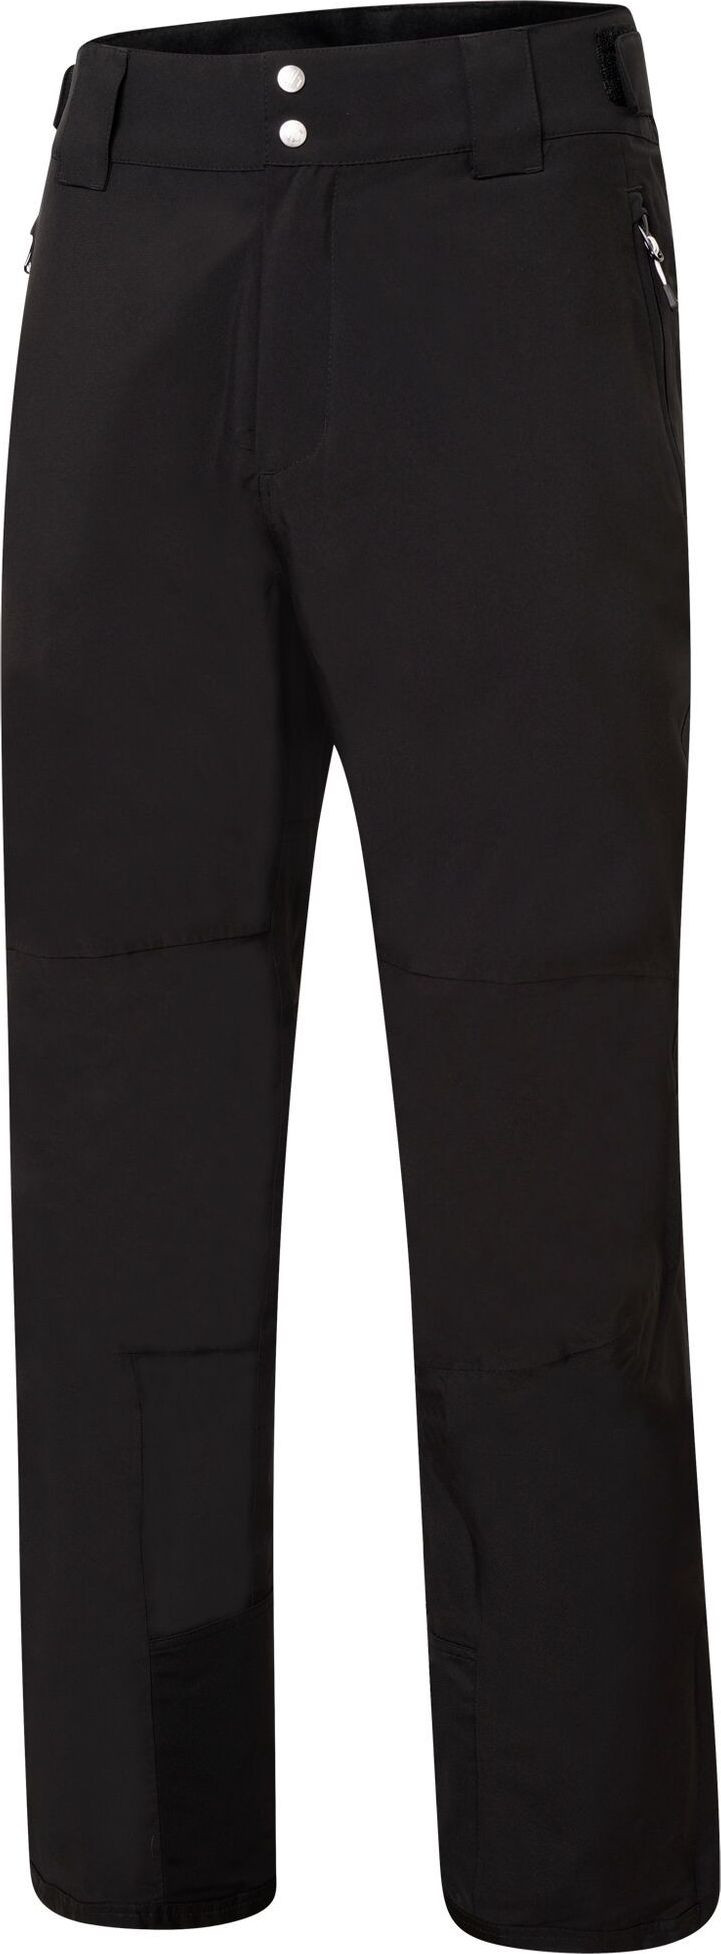 Dámské lyžařské kalhoty Dare2B Effused II Pant 800 černé Černá 34